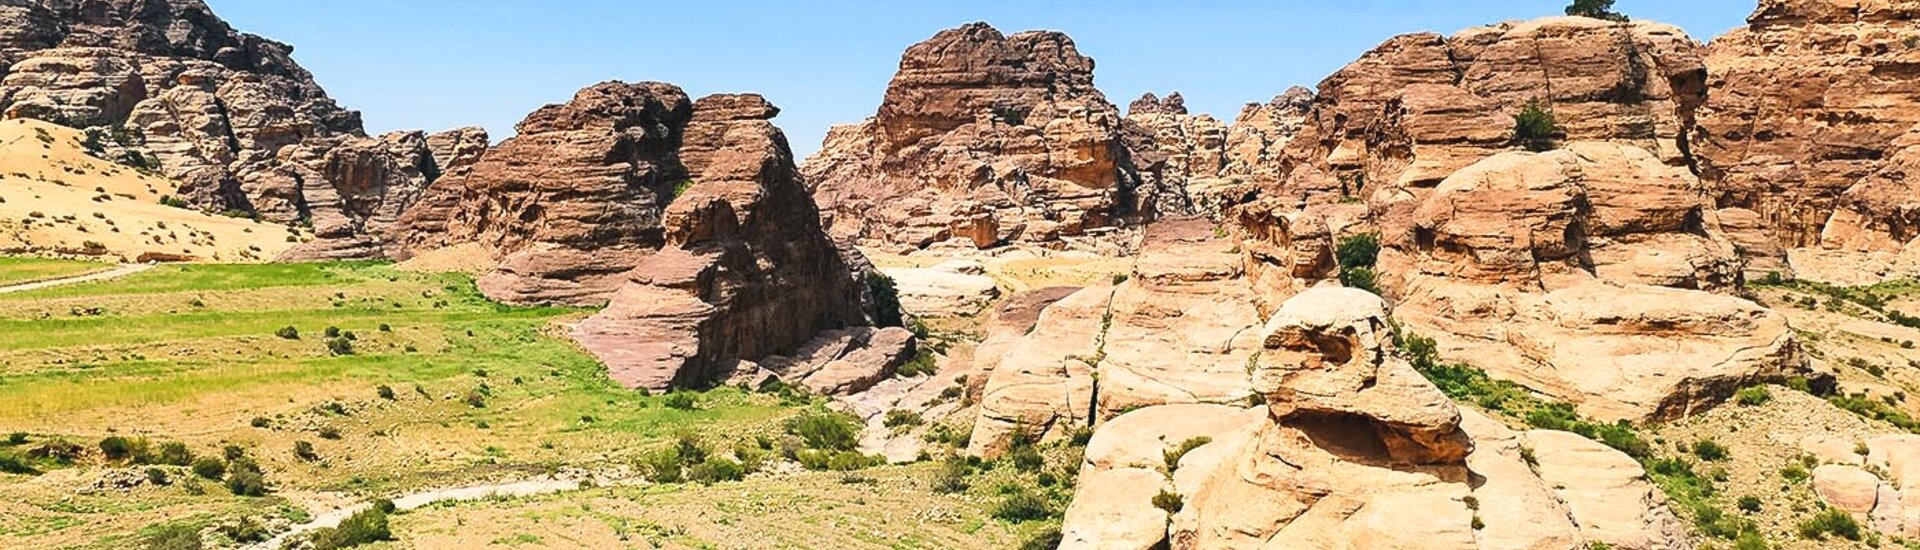 Landschaft rund um Little Petra in Jordanien